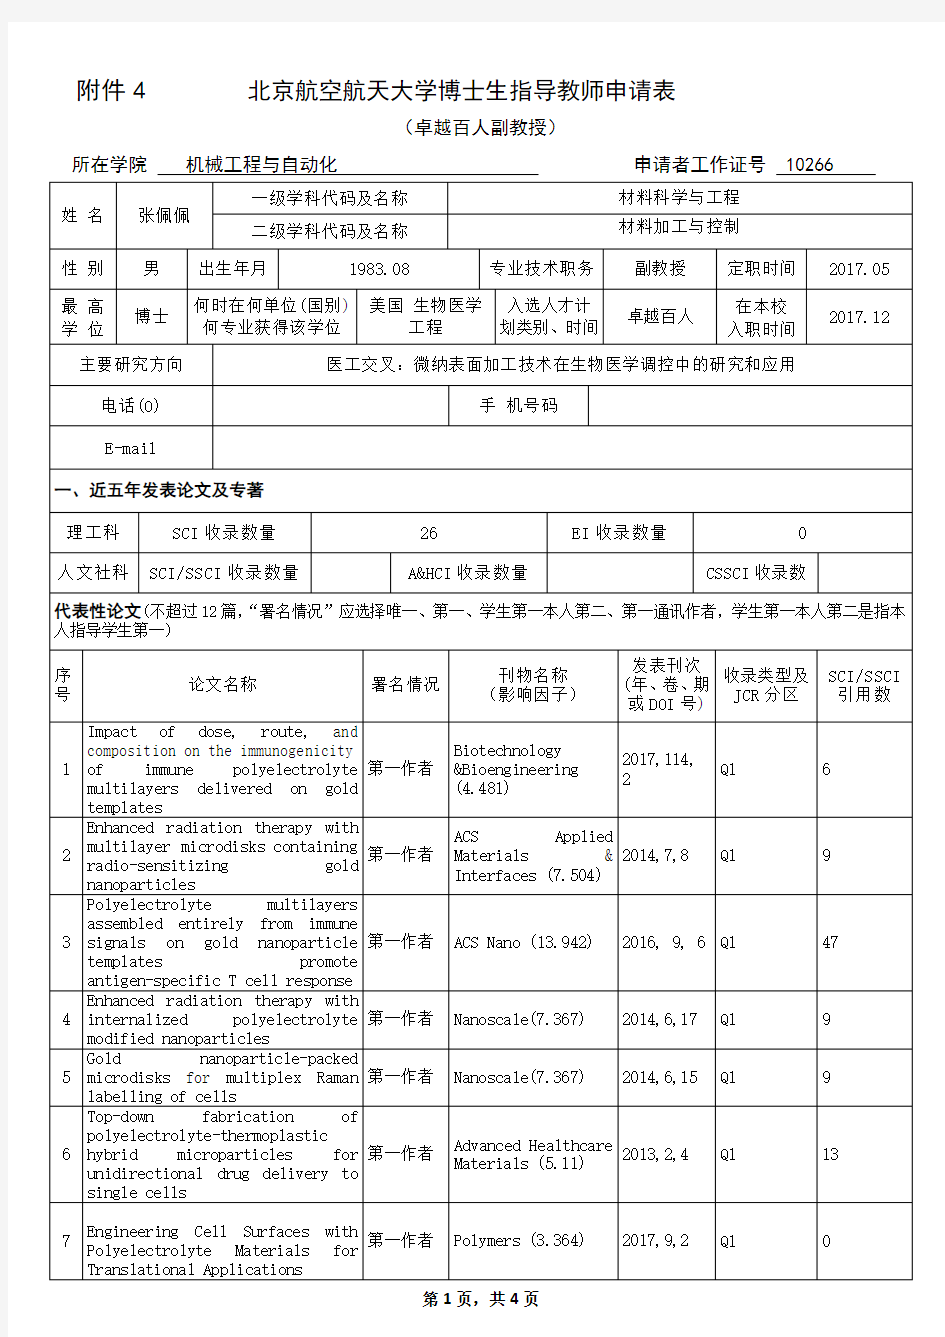 北京航空航天大学博士生指导教师申请表教授-北航机械学院